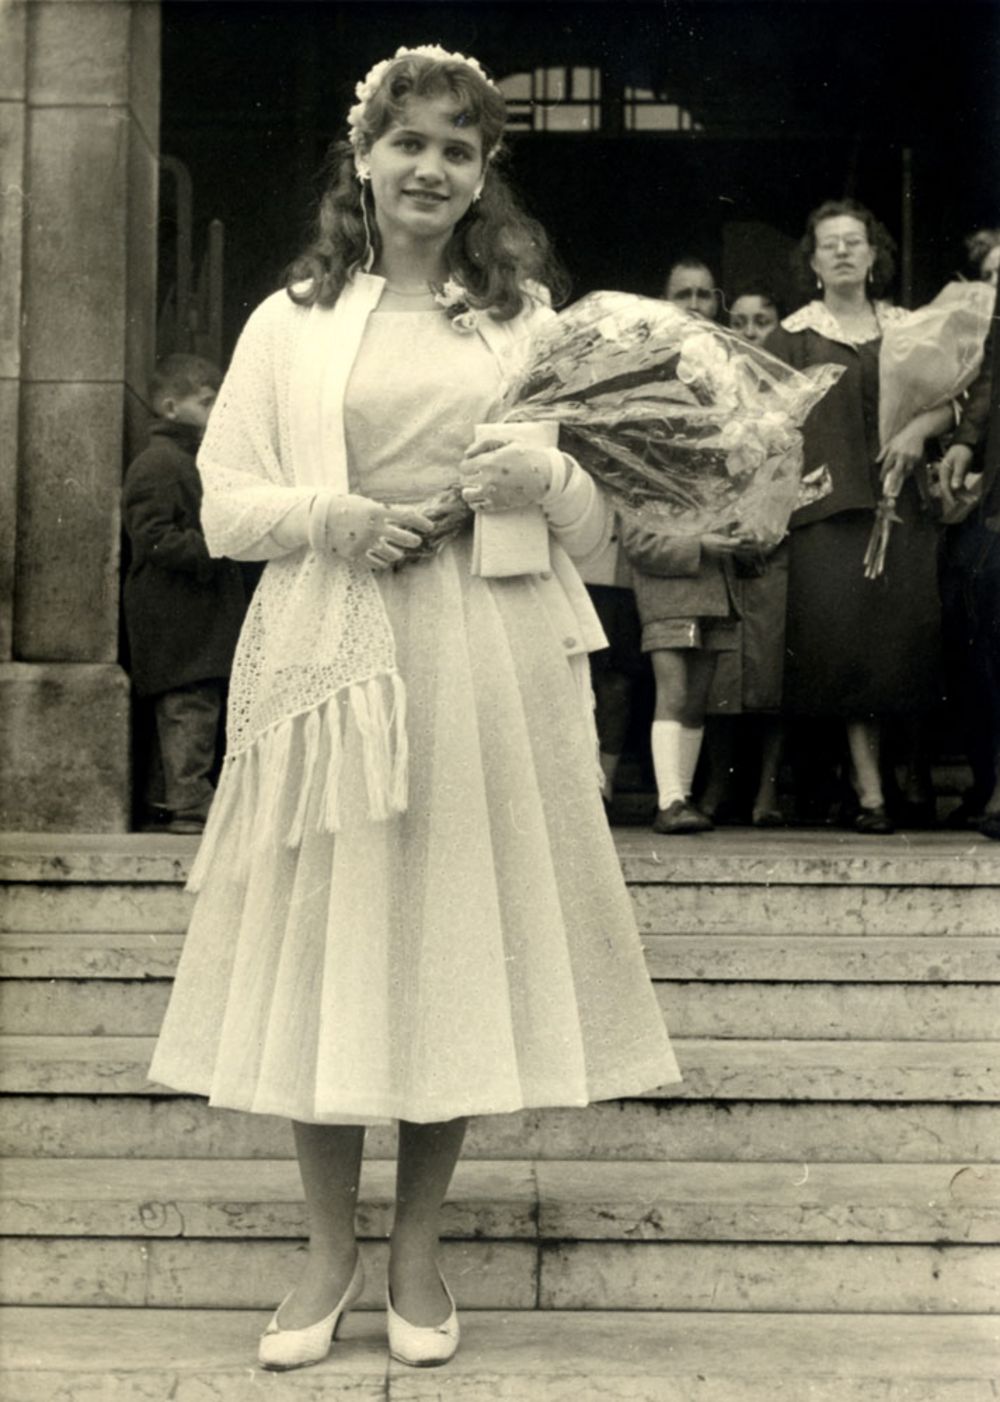 Photographie de la Rosière de l’année 1957 ©Coll. Musée de l’Histoire vivante